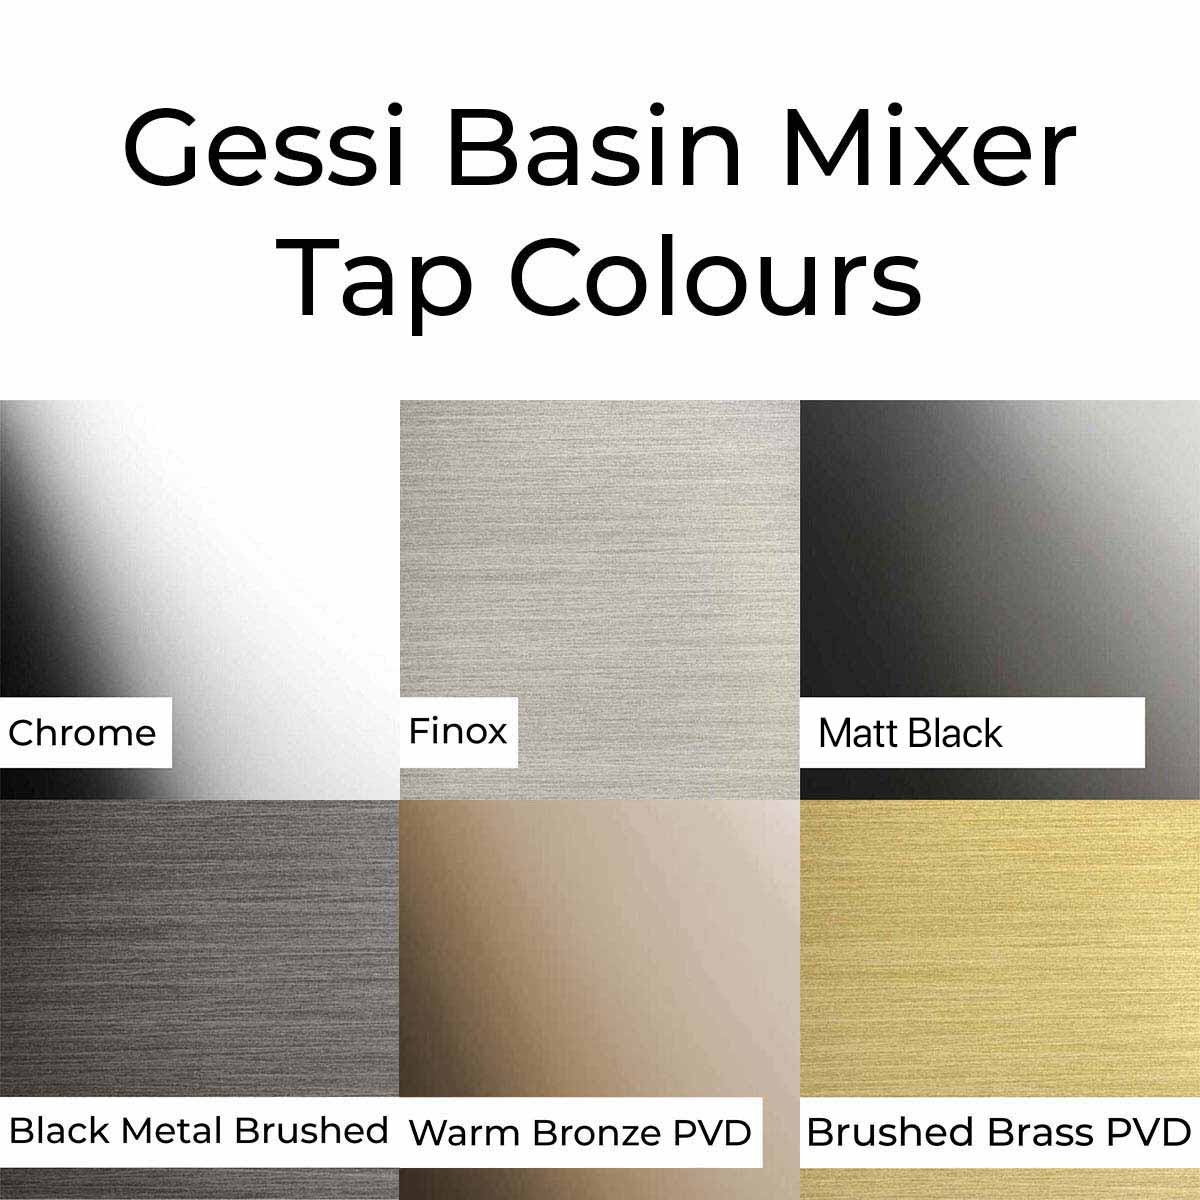 Gessi Via Tortona Basin Mixer Tap Colours